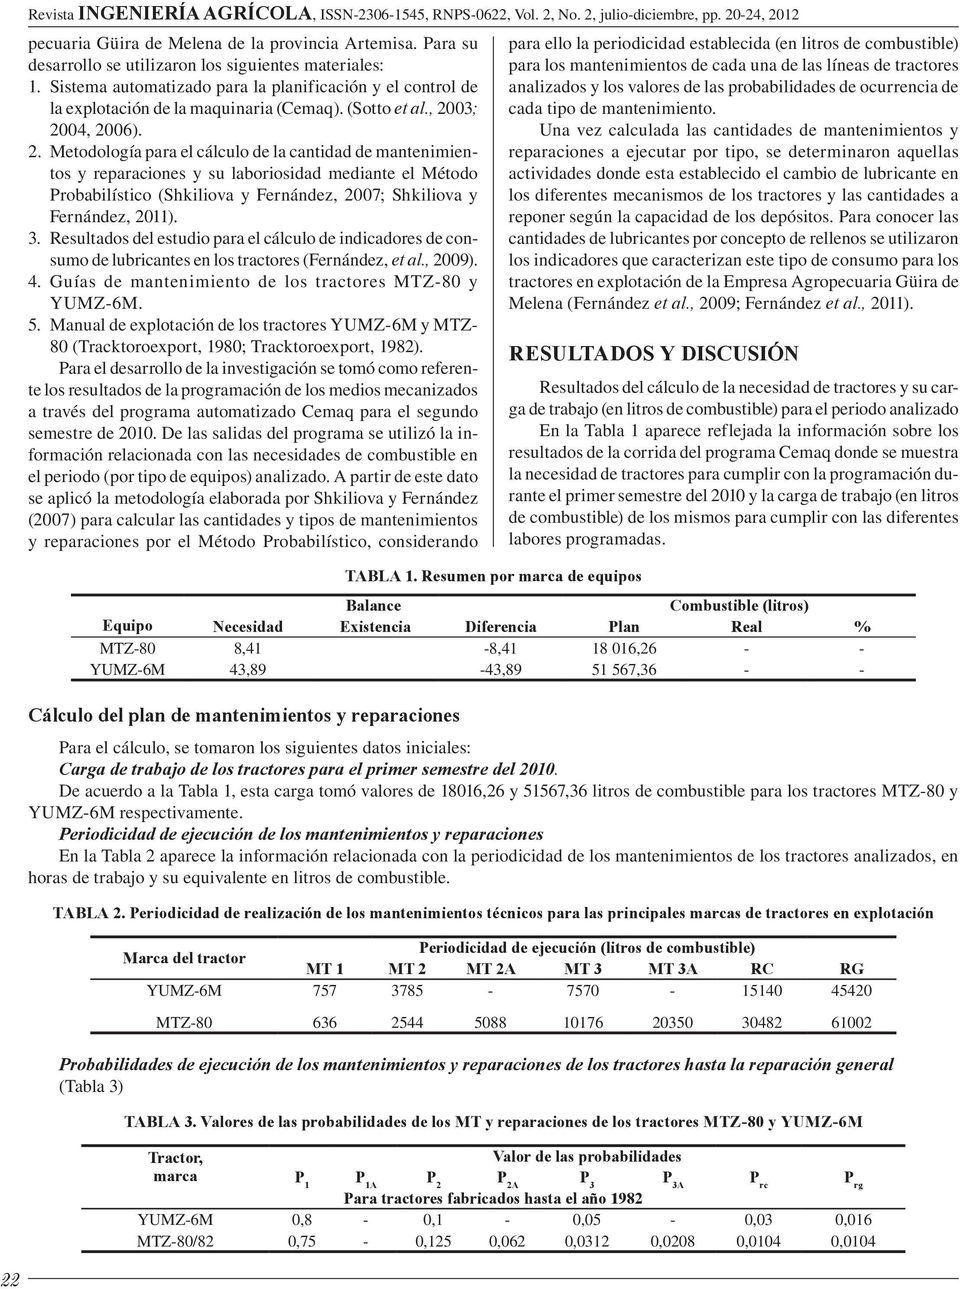 03; 2004, 2006). 2. Metodología para el cálculo de la cantidad de mantenimientos y reparaciones y su laboriosidad mediante el Método Probabilístico (Shkiliova y Fernández, 2007; Shkiliova y Fernández, 2011).